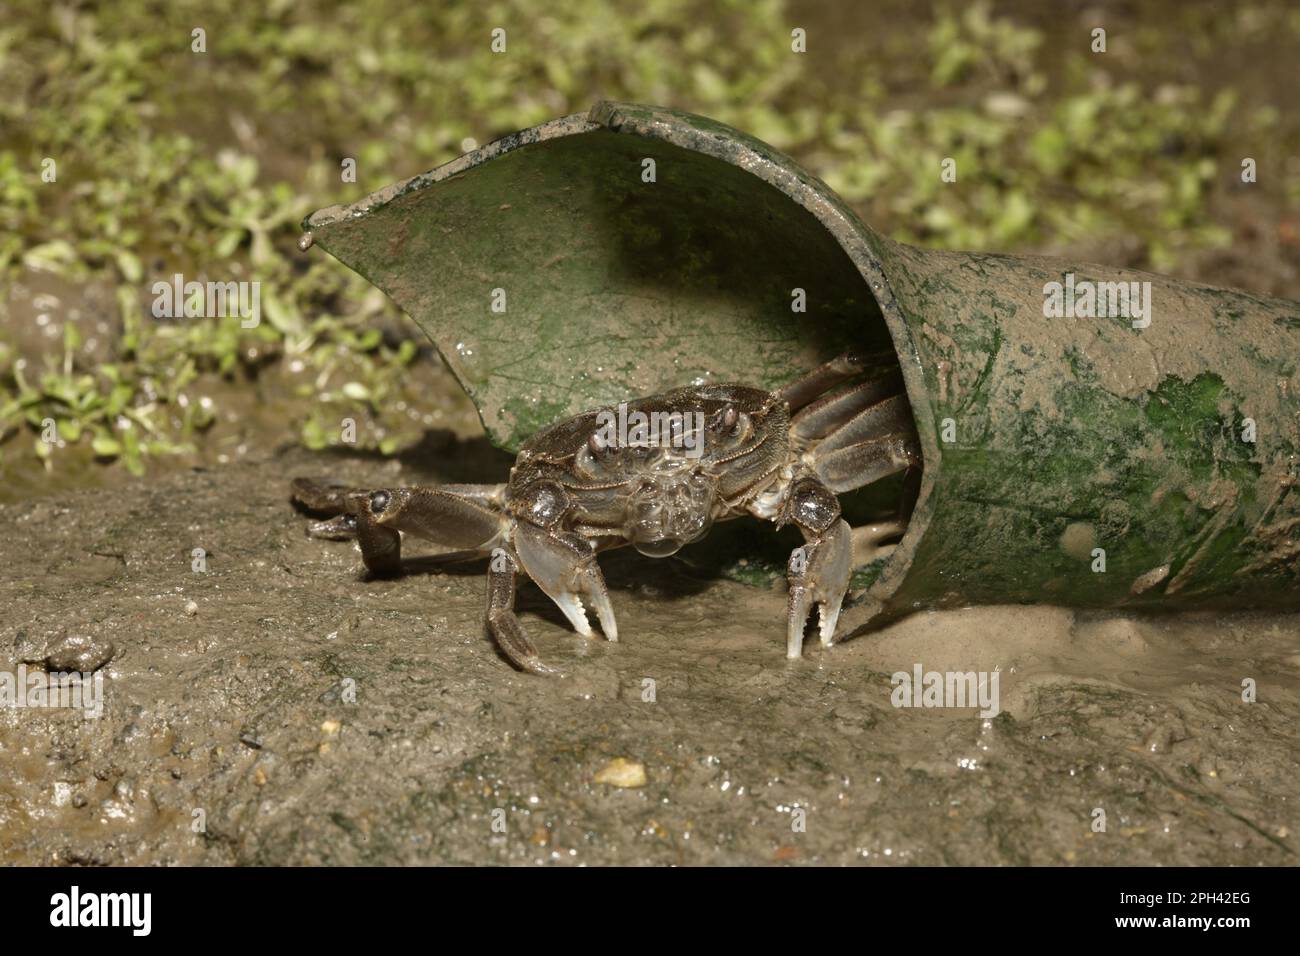 Le crabe chinois Mitten (Eriocheir sinensis) introduit des espèces, adultes, en bouteille brisée, River Thames, Londres, Angleterre, Royaume-Uni Banque D'Images